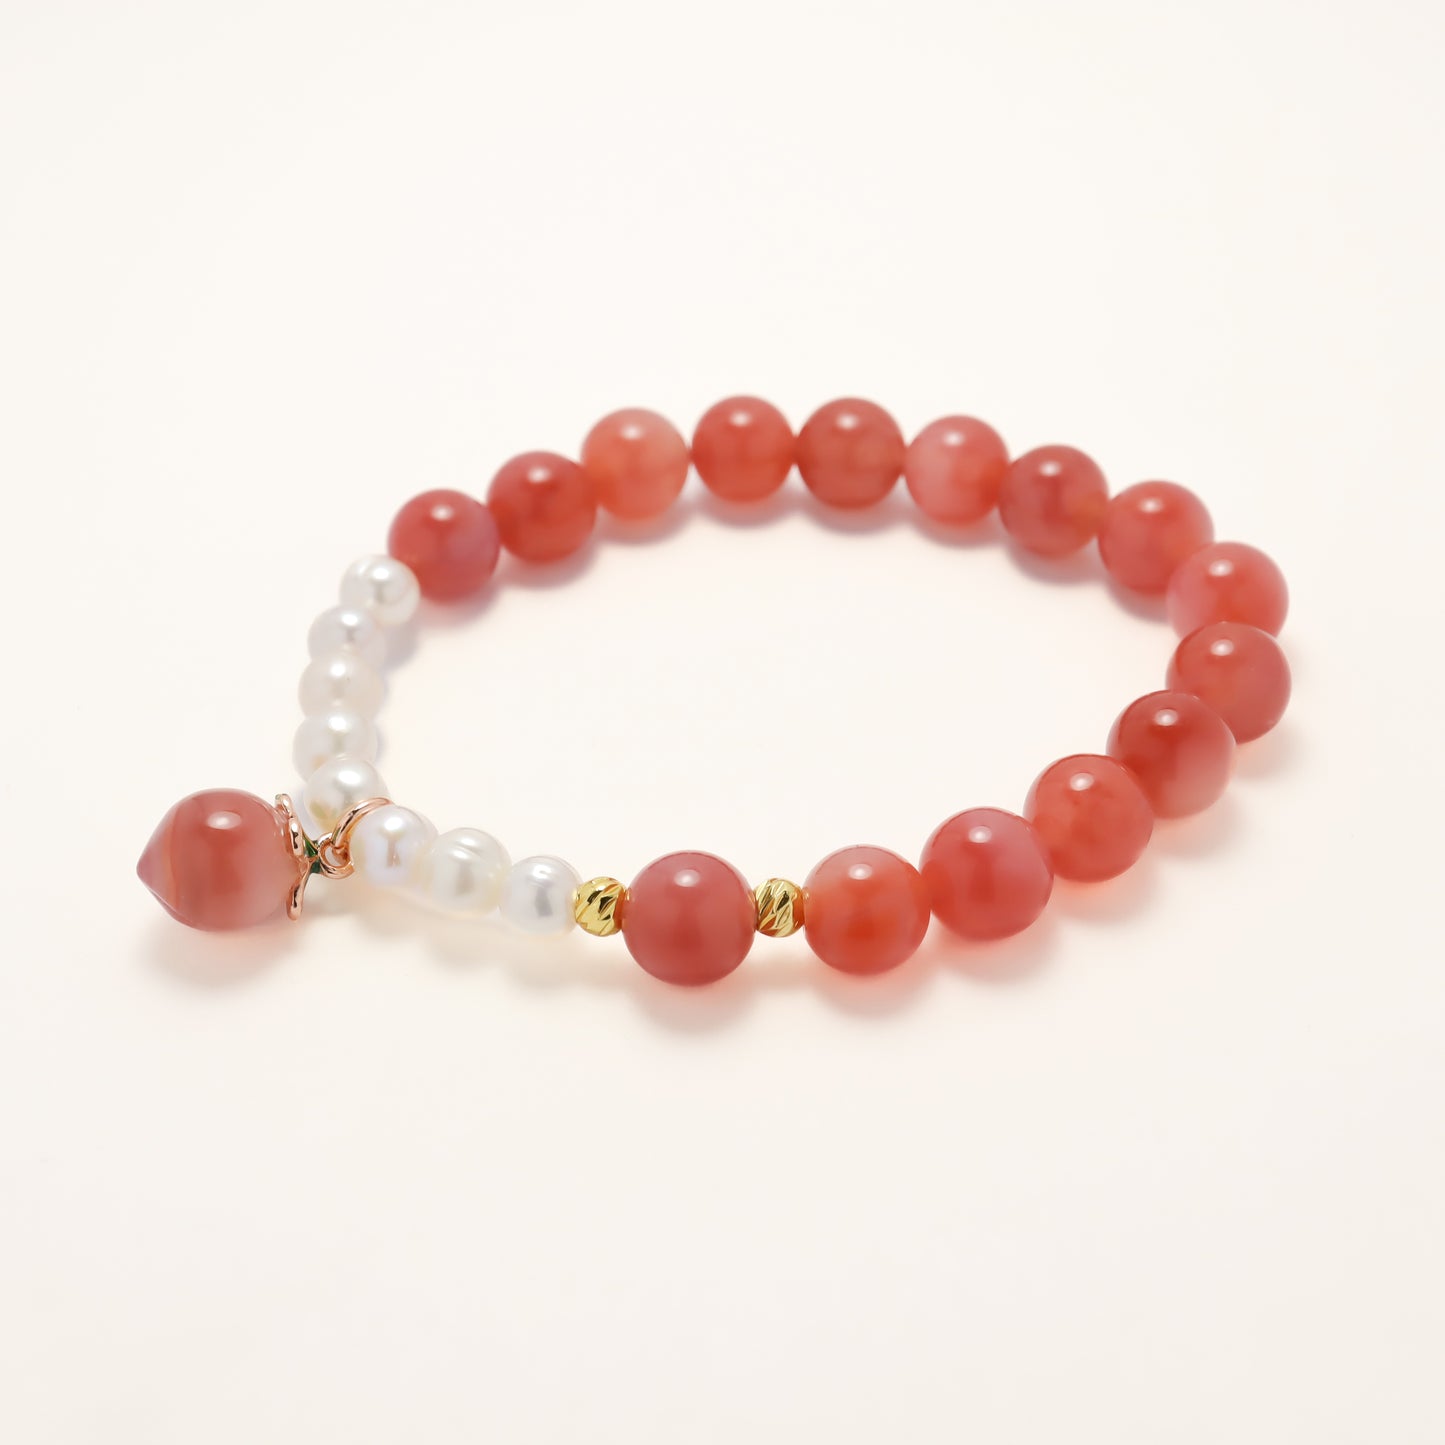 Eternal love - Freshwater Pearl & Crimson Agate Bracelet